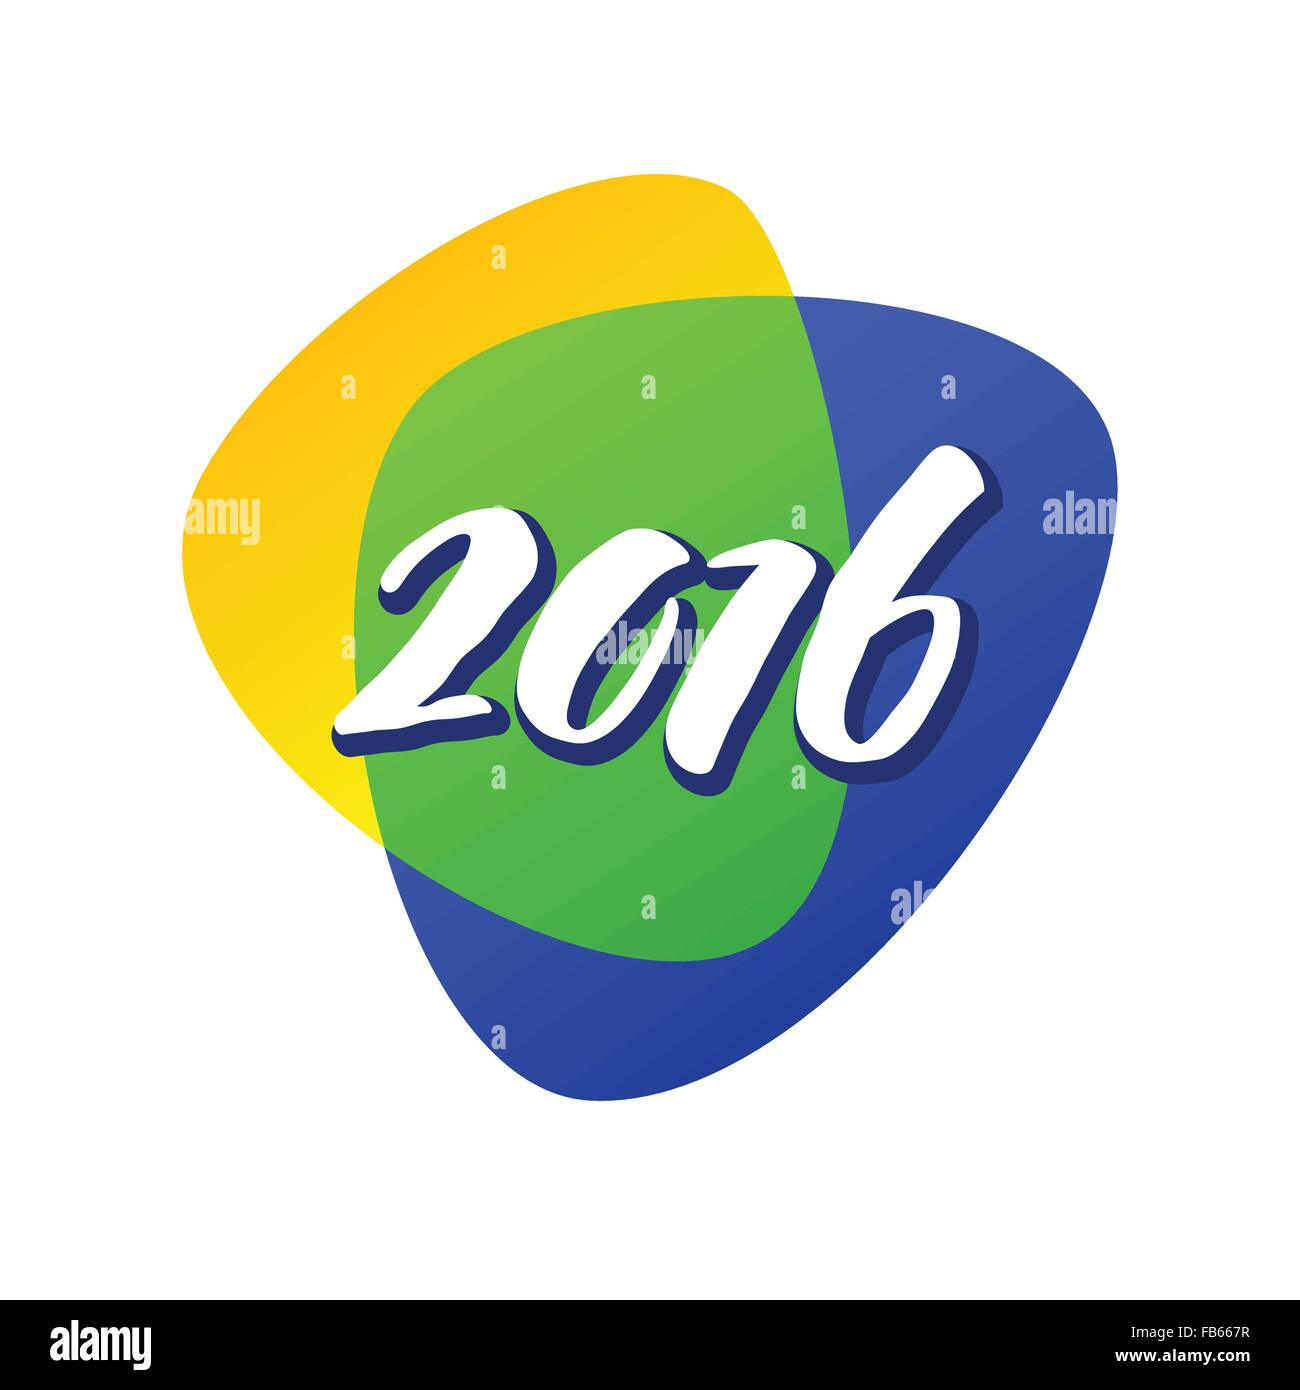 I colori di sfondo della bandiera brasiliana con l'iscrizione 2016. Illustrazione Vettoriale Illustrazione Vettoriale